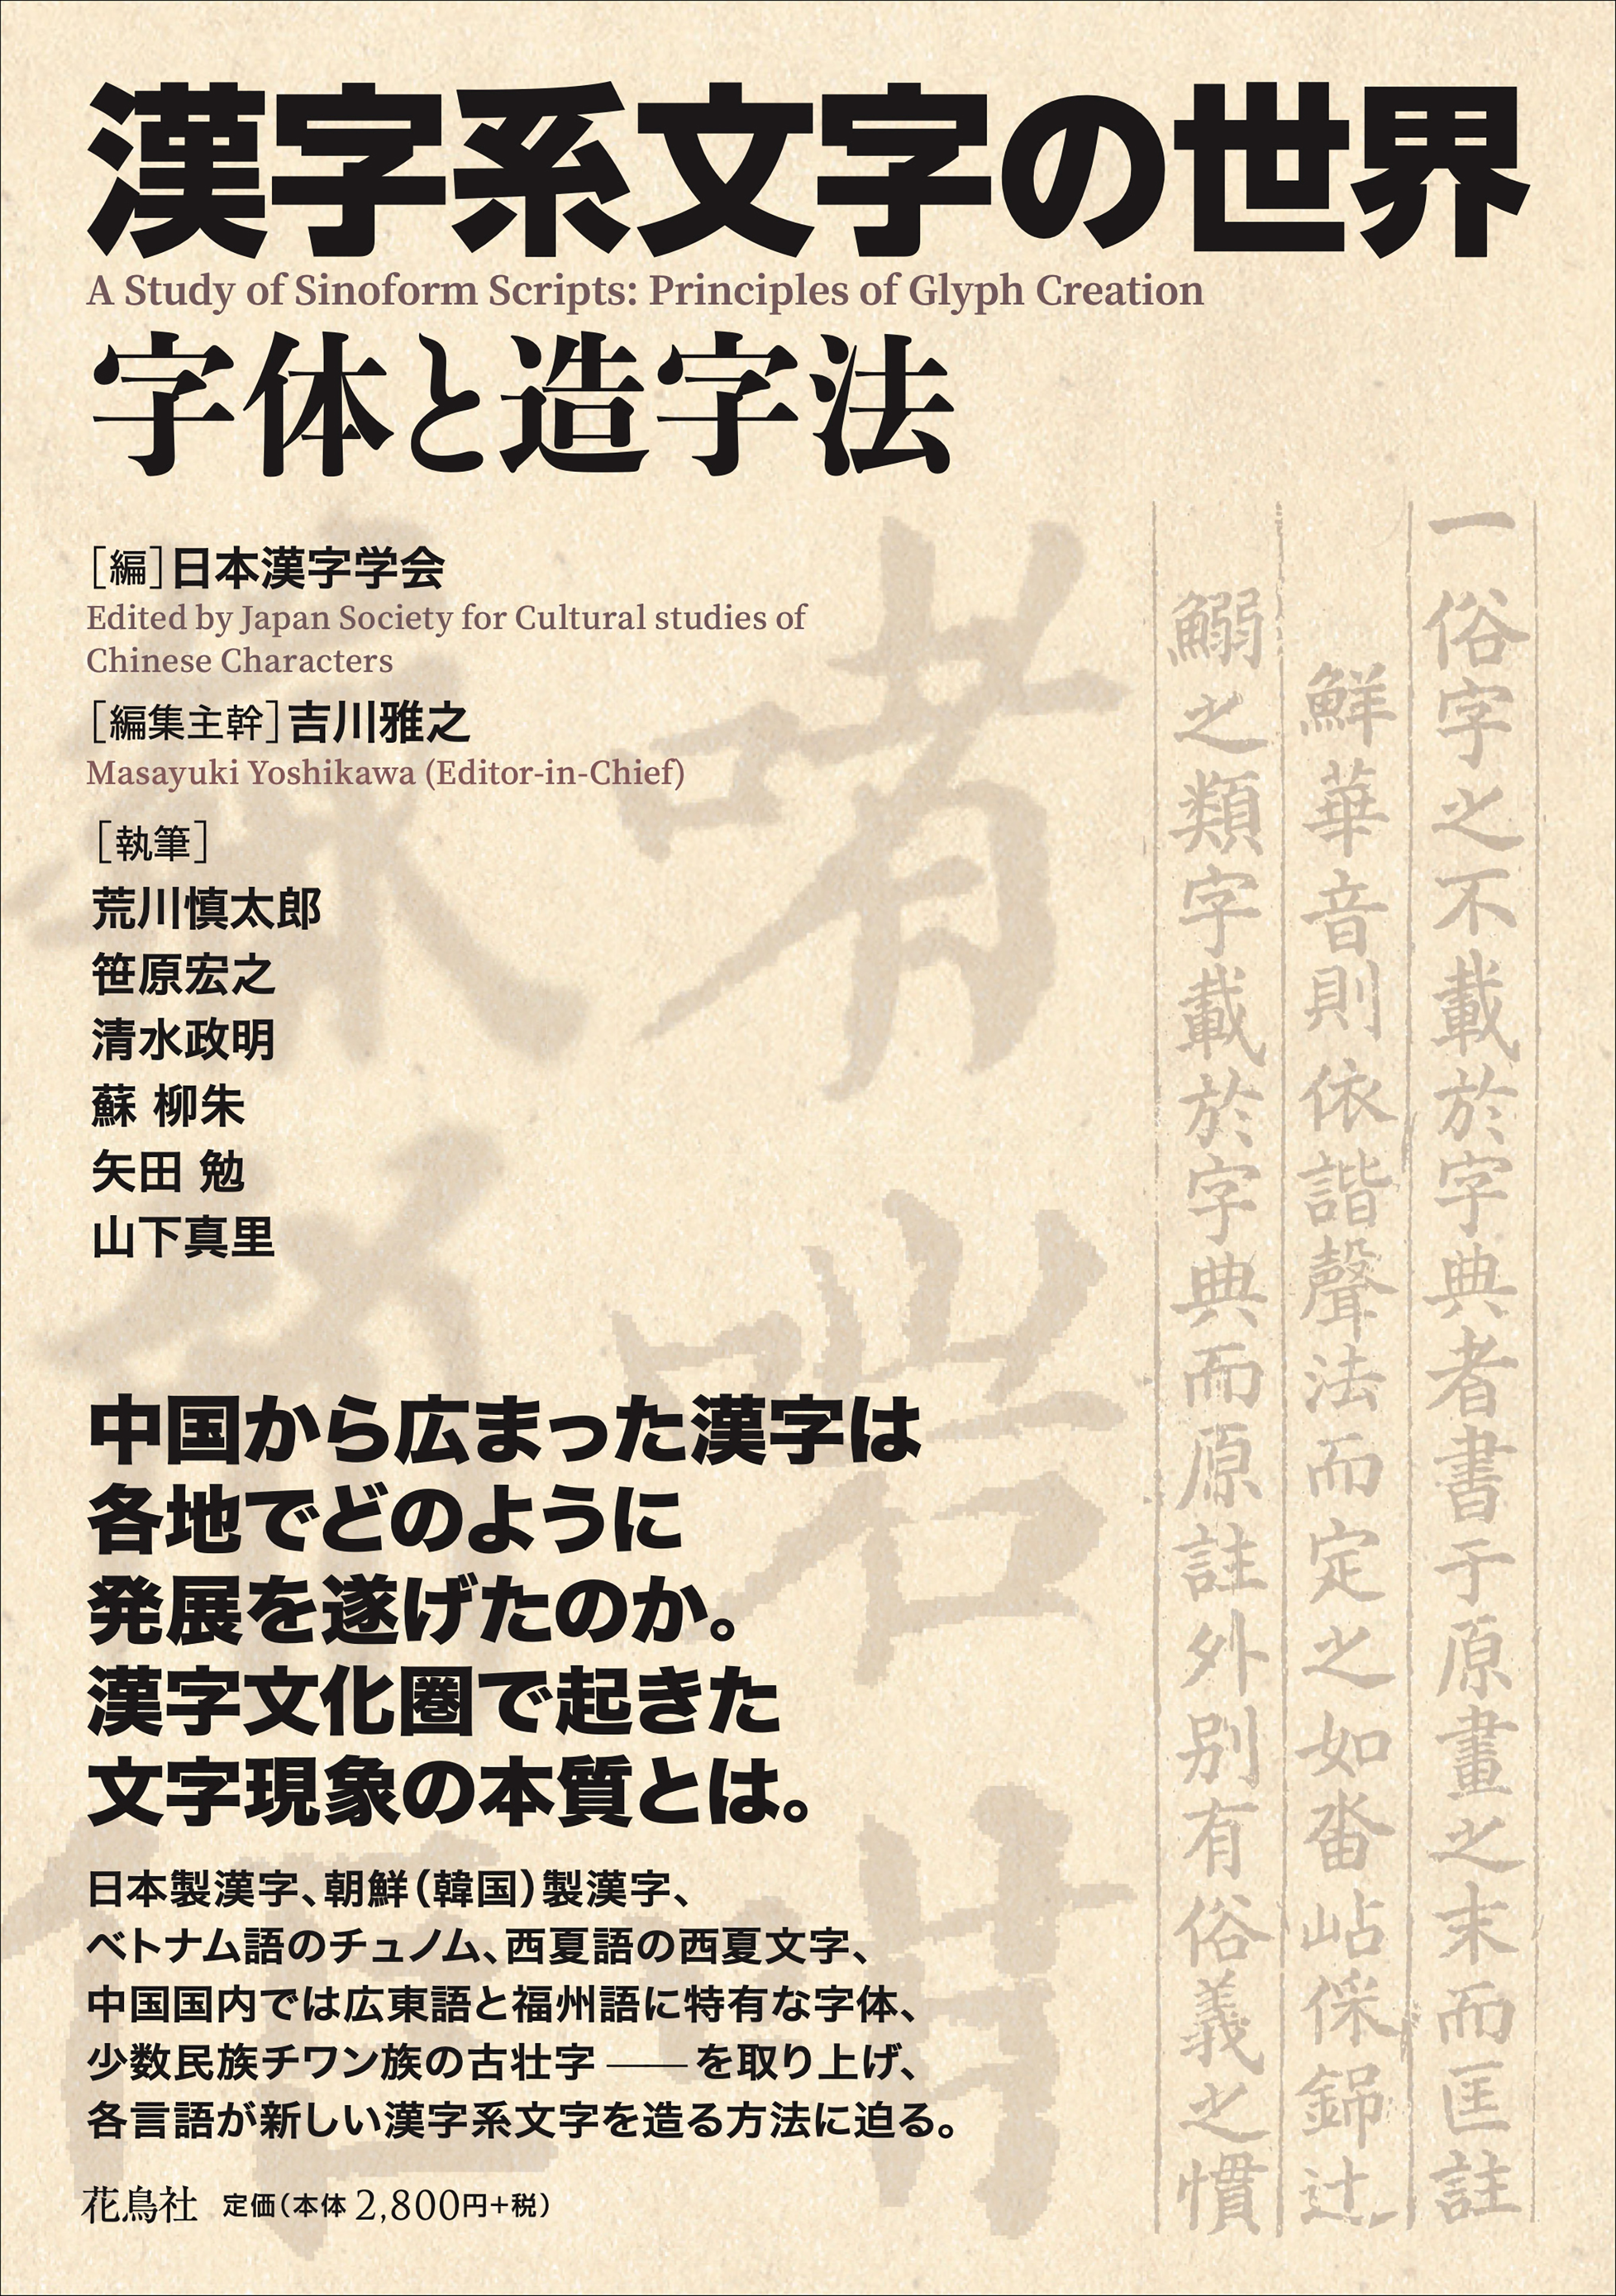 薄茶色の古い紙を思わせるような表紙に半透明の大小の漢文、黒字でタイトルと書籍解説